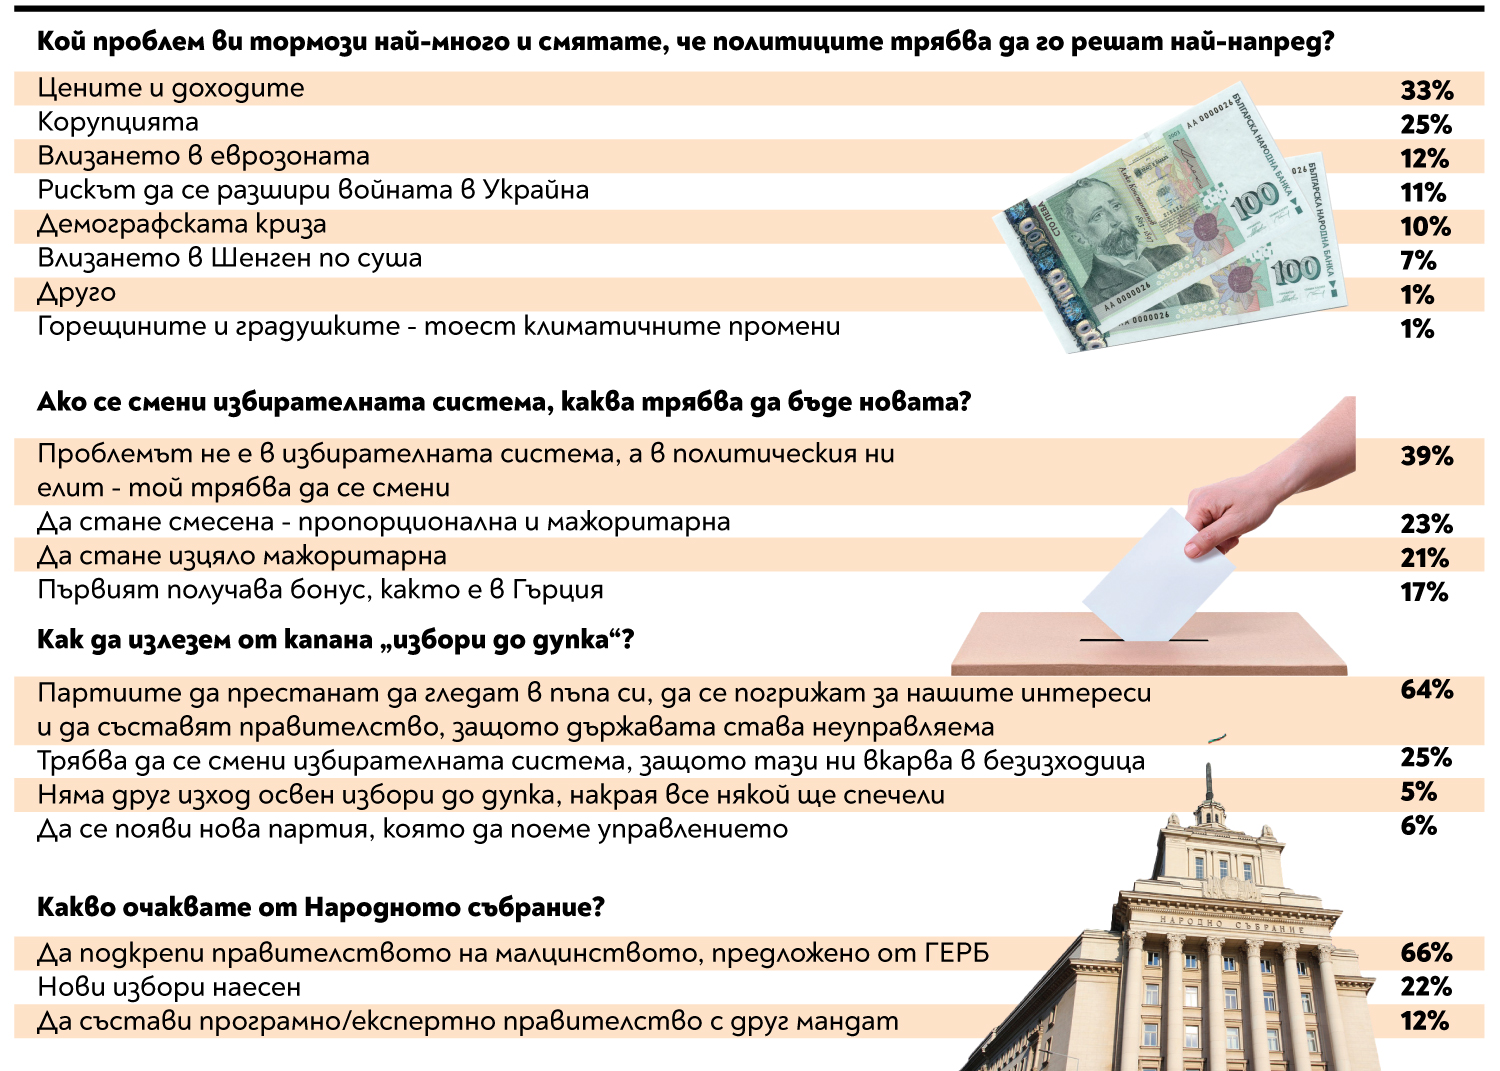 Анкета на 24chasa.bg: Българите искат редовен кабинет, чакат мерки за цени и доходи